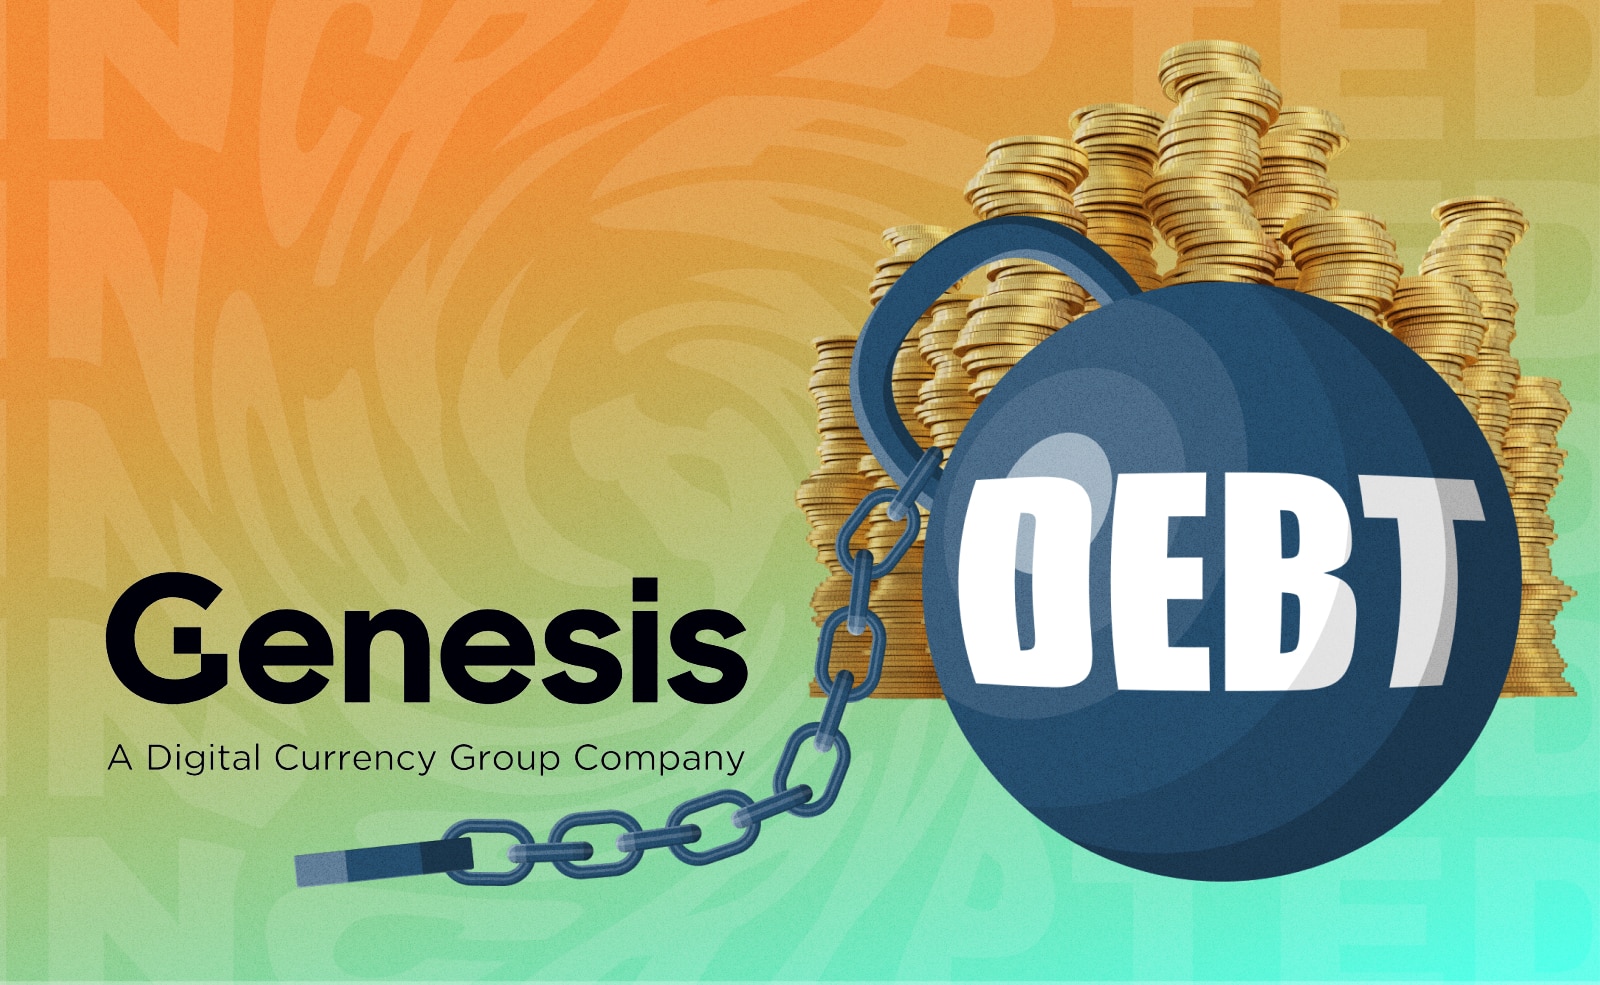 Криптовалютный брокер Genesis, дочерняя компания DCG, должен своим кредиторам более $3 млрд. Из них около $900 млн — это обязательства перед Gemini.